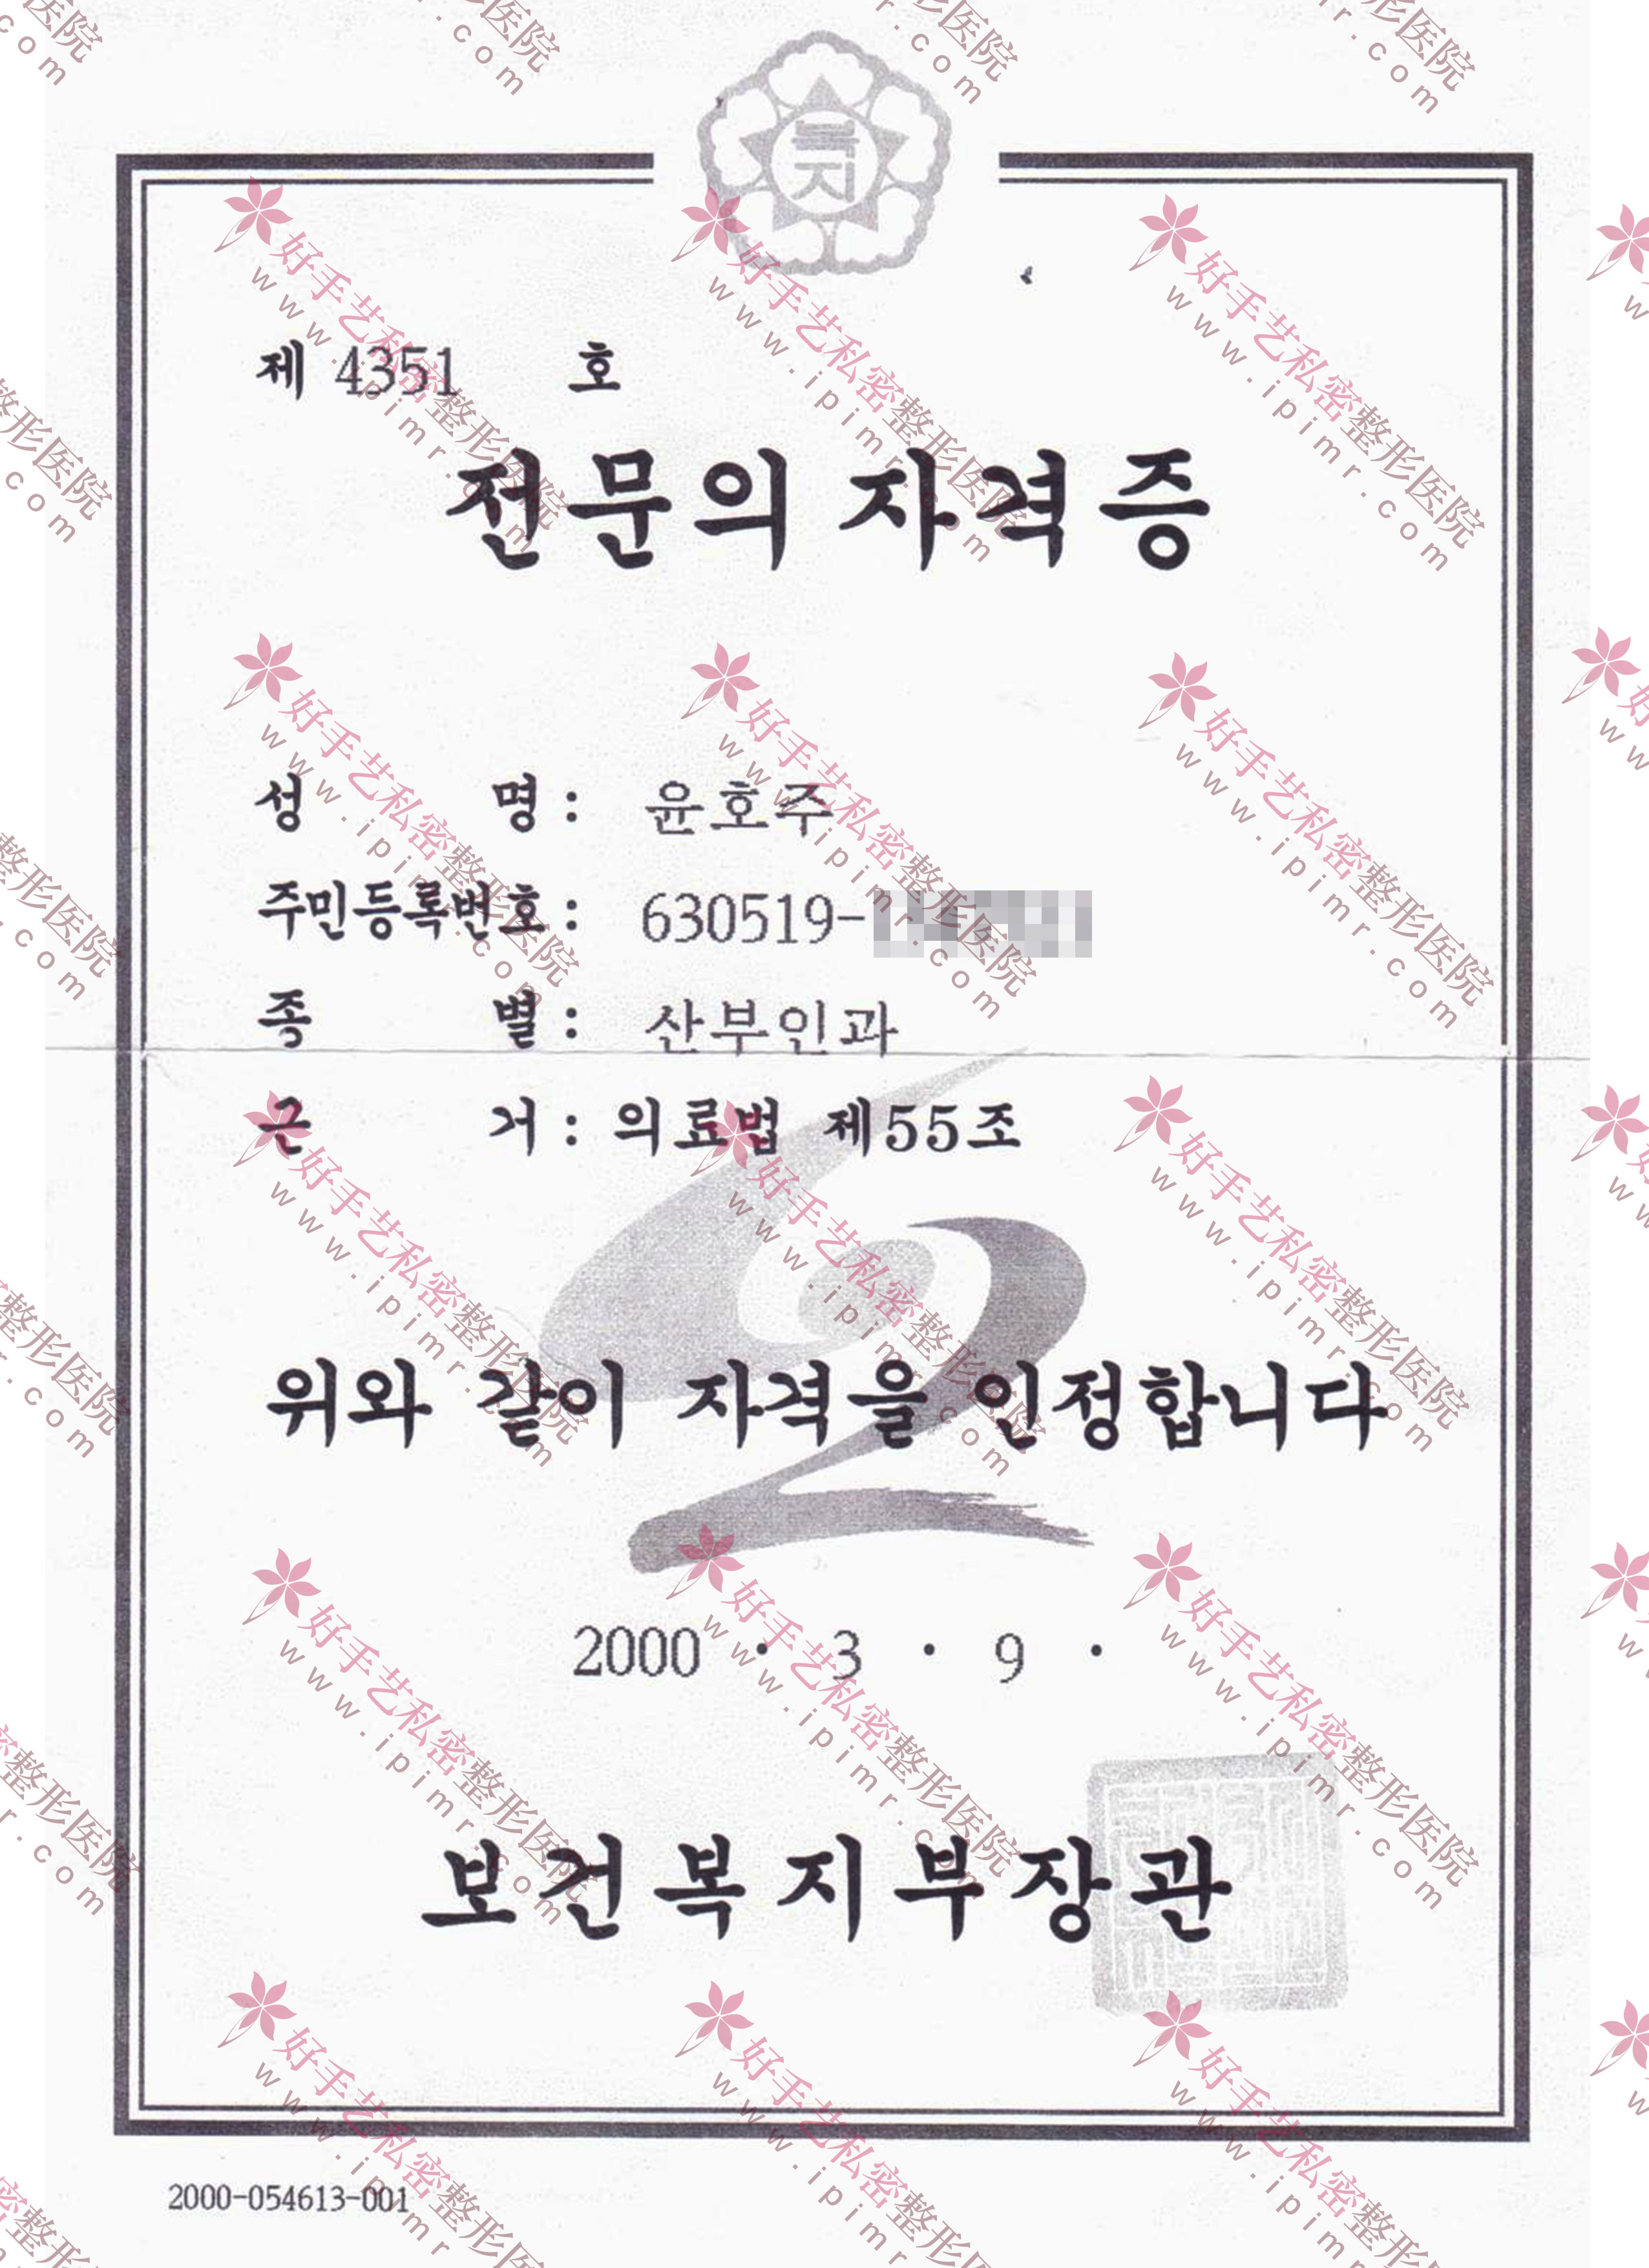 韩国保健福祉部颁发的专业医生资格证